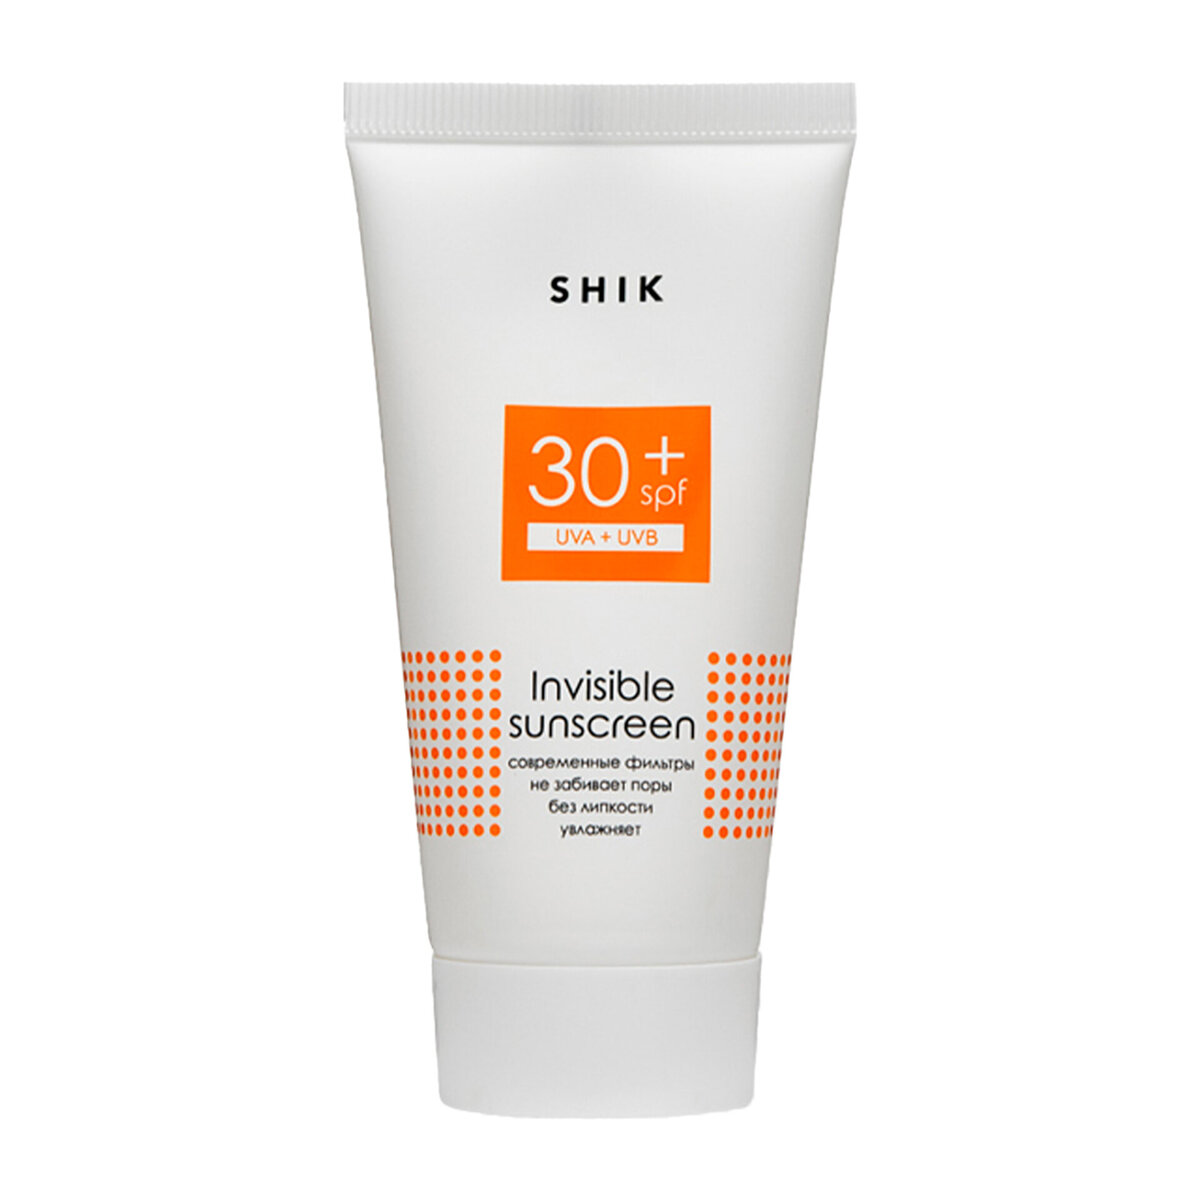    Солнцезащитный крем для лица и тела SPF 30+, Shik